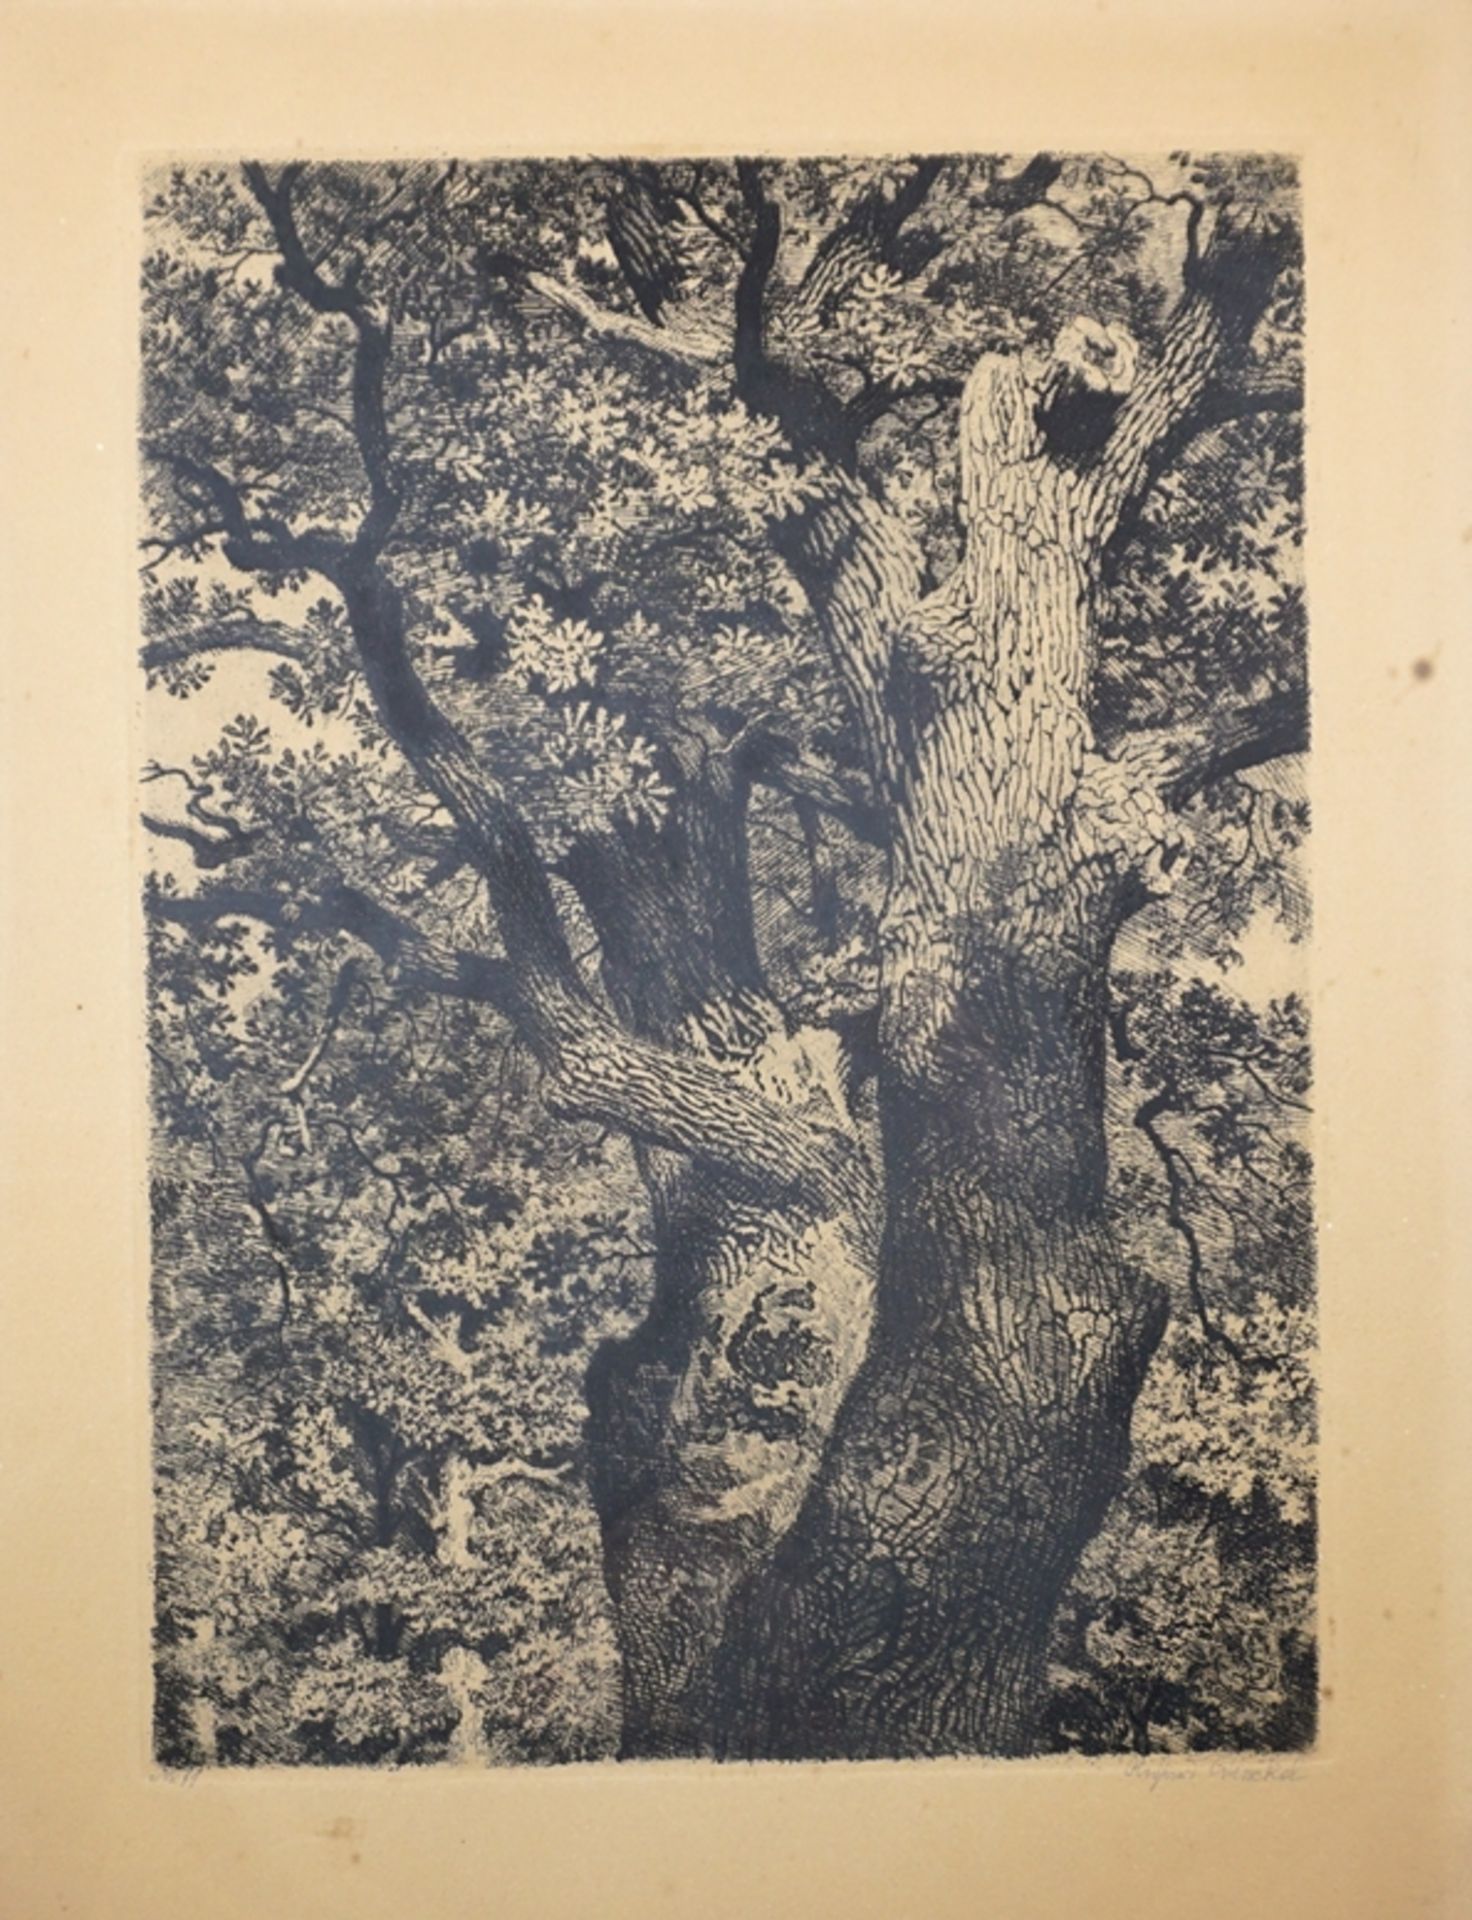 Richard Winckel (1870, Berleburg - 1941, Magdeburg), "Kastanienbaum", ca. 1930, Radierung